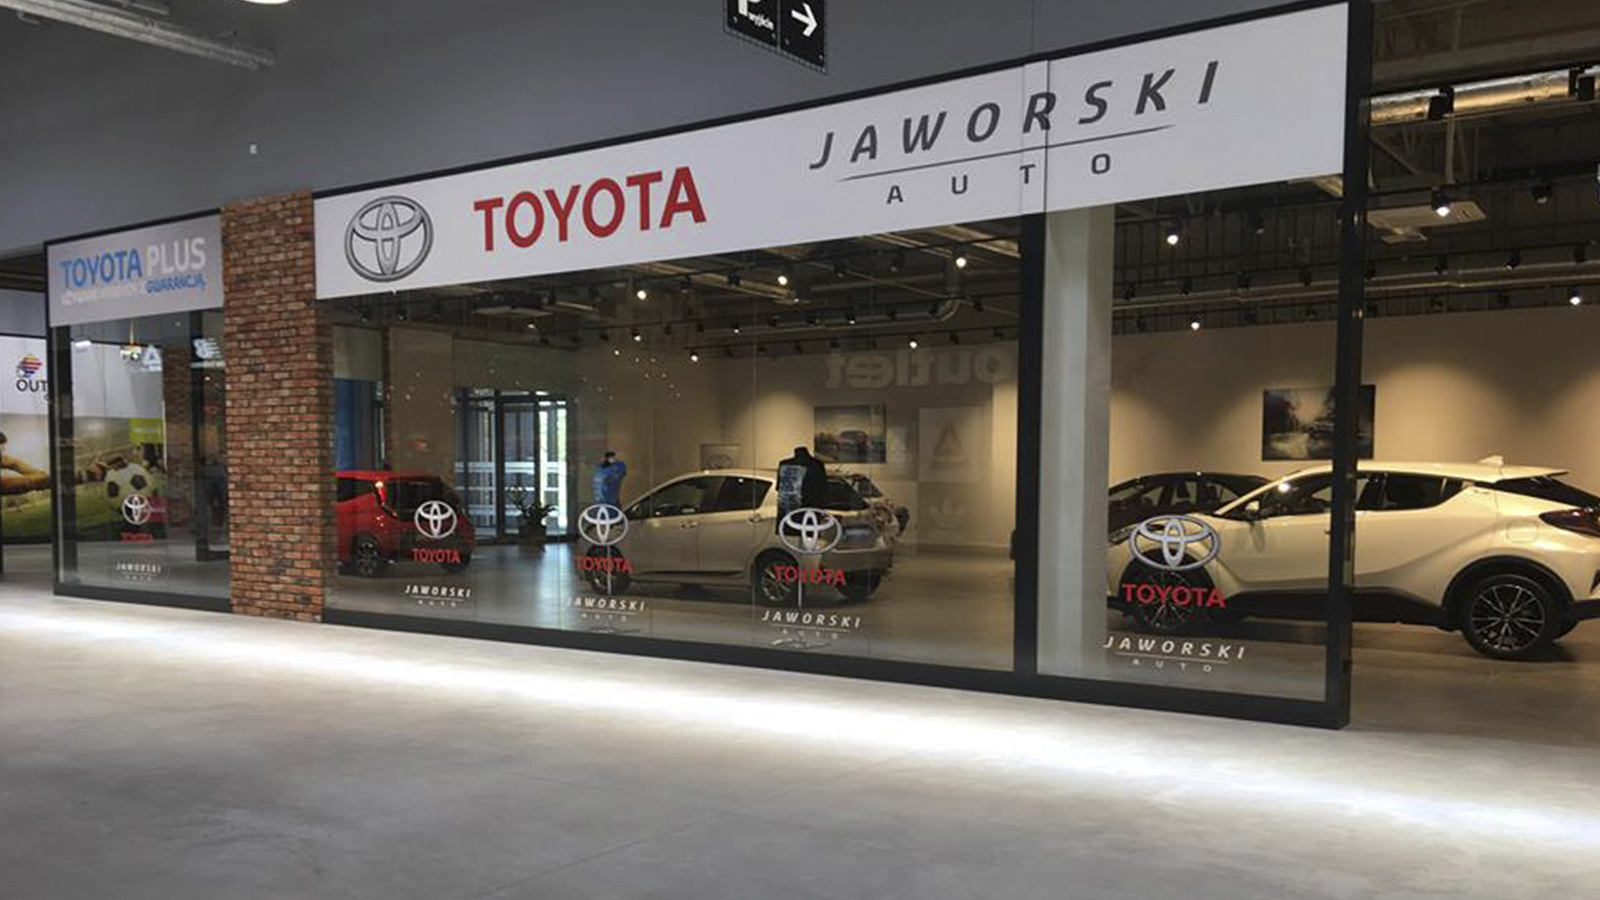 Jaworski Auto Toyota Jaworski Auto w Outlet Center Bydgoszcz